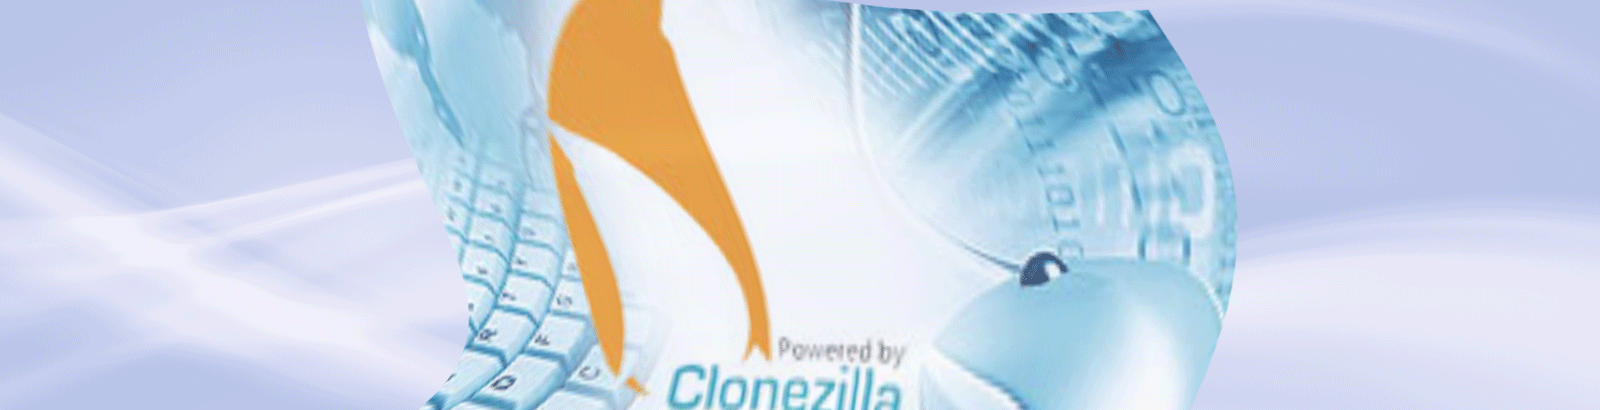 Clonezilla - Clonagem de equipamentos de informática com software livre